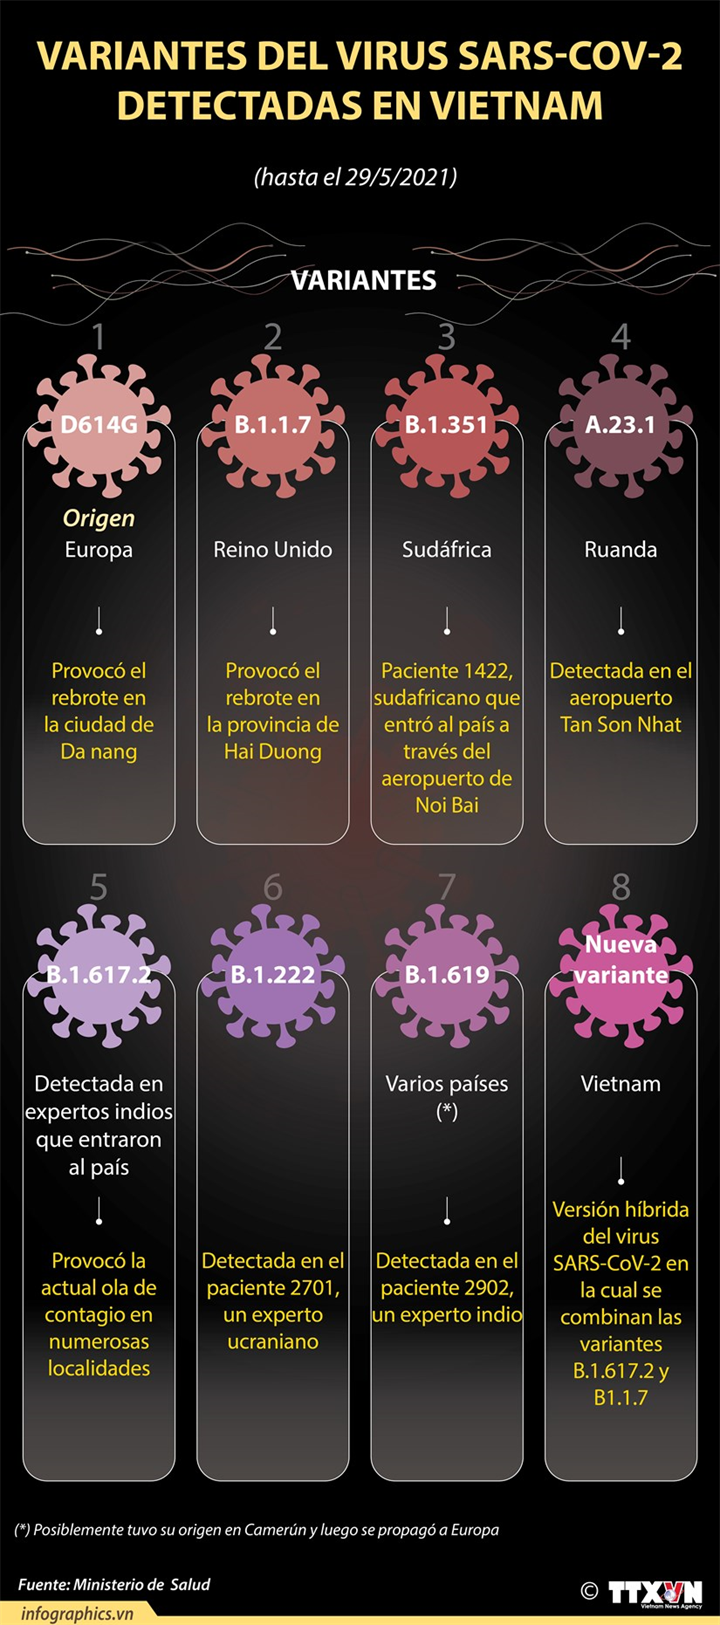 Las variantes del virus SARS-CoV-2 detectadas en Vietnam